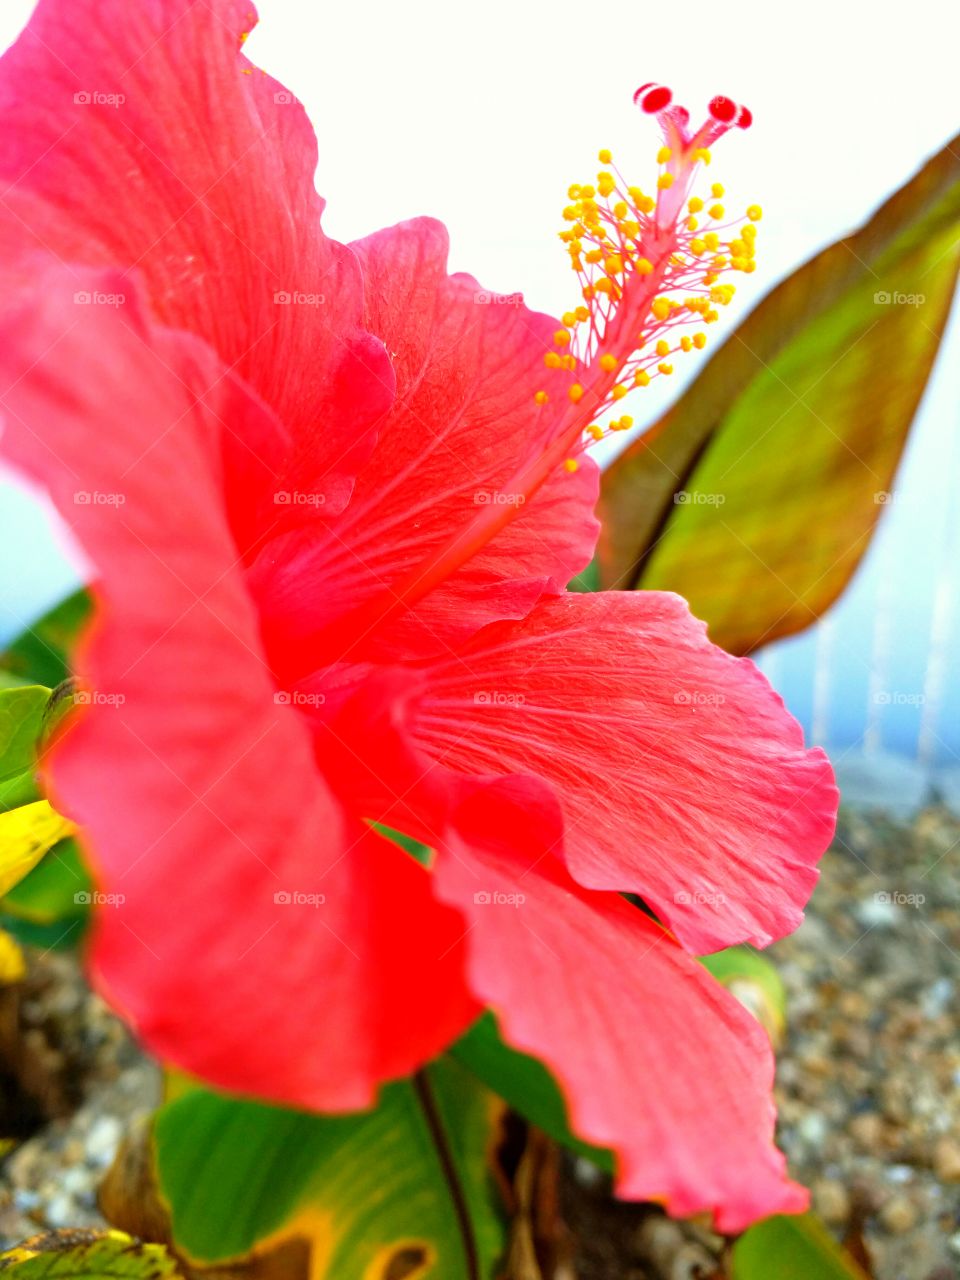 hibiscus exotic red petals, up close